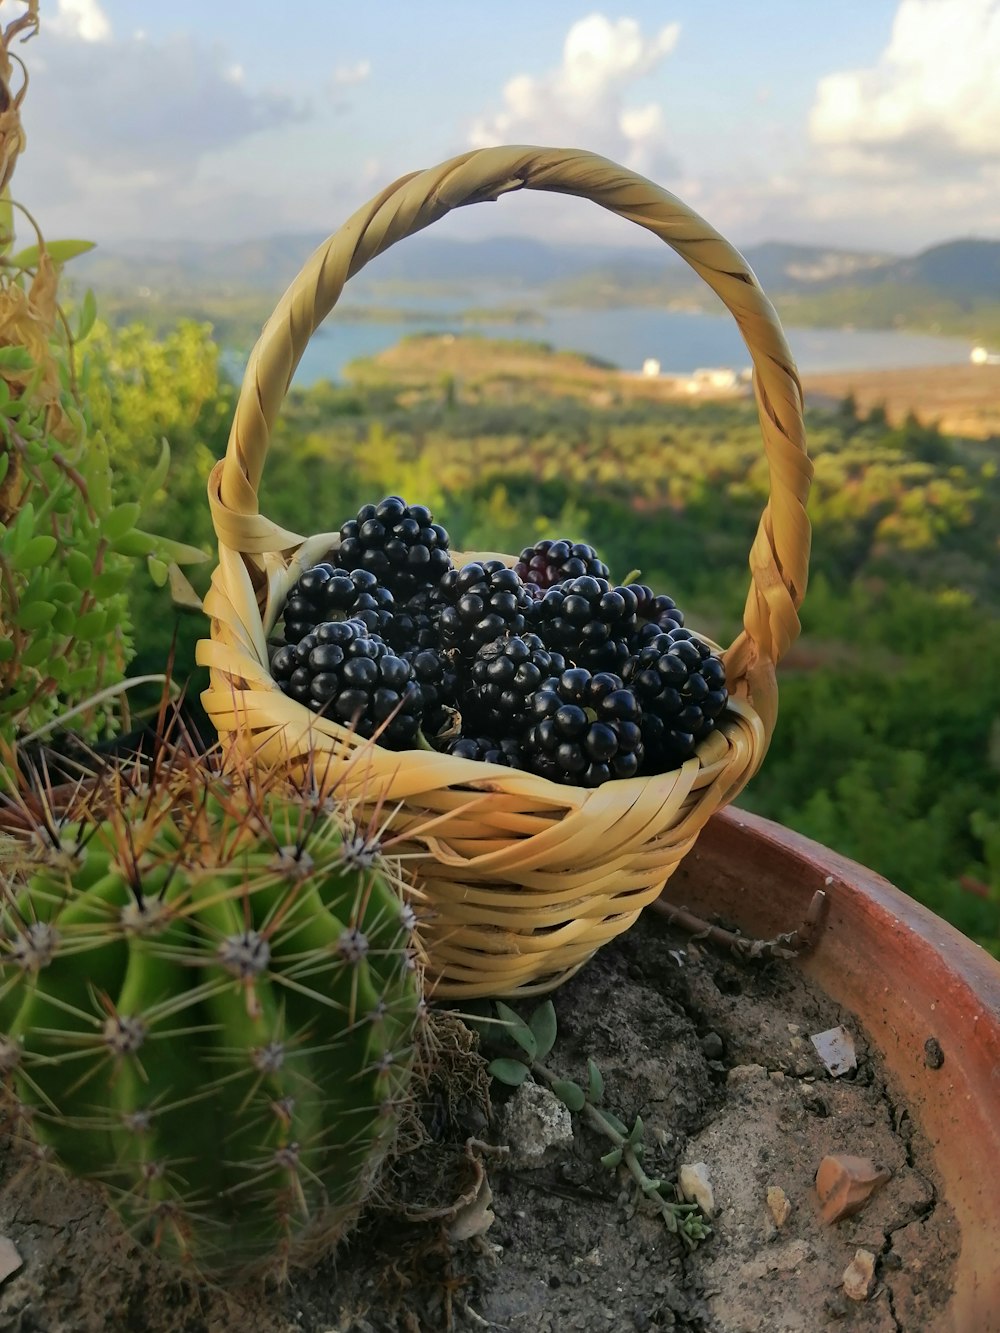 berries in basket